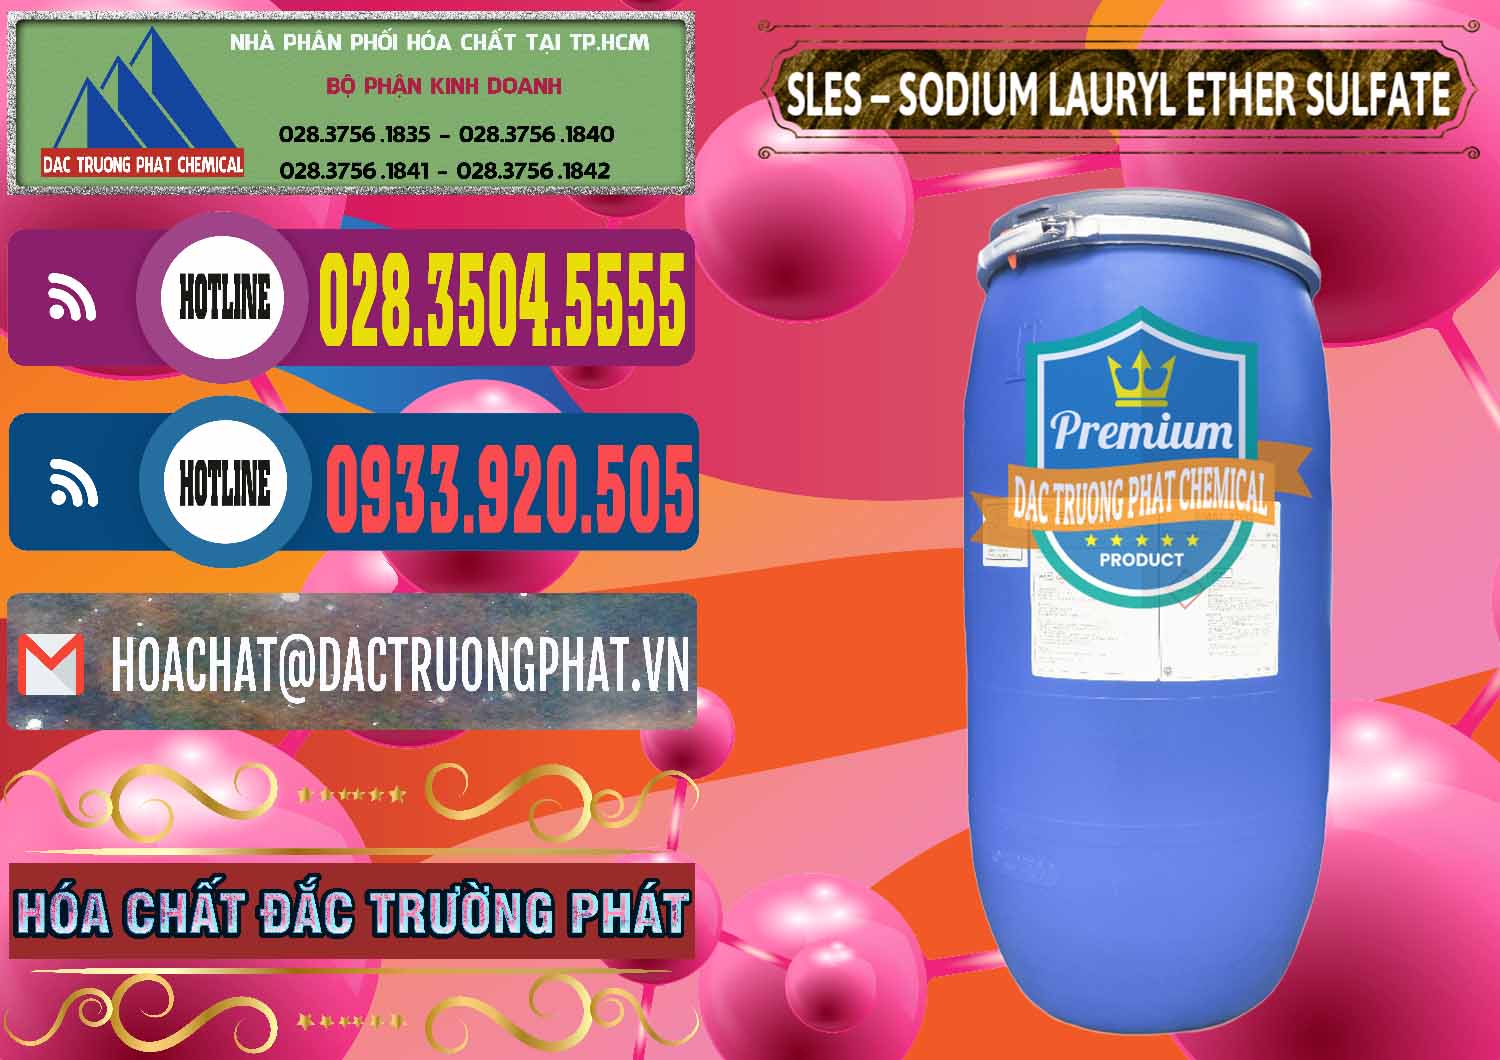 Cty chuyên cung cấp & bán Chất Tạo Bọt Sles - Sodium Lauryl Ether Sulphate Kao Indonesia - 0046 - Chuyên phân phối và cung cấp hóa chất tại TP.HCM - muabanhoachat.com.vn